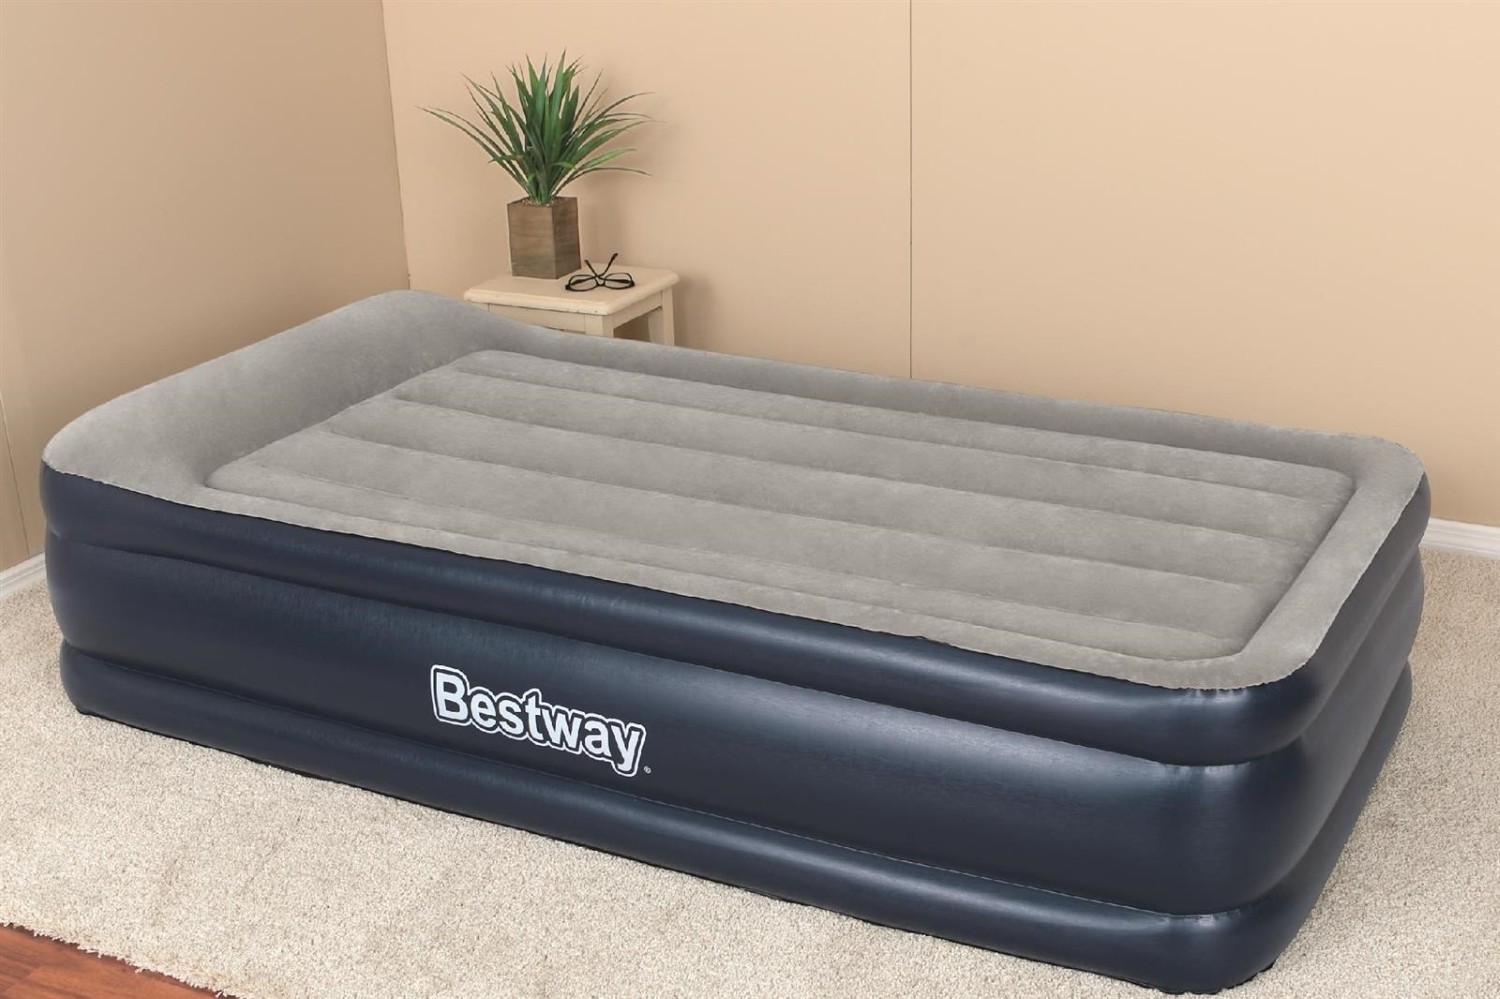 Bestway кровать надувная ПВХ 191х97х46см электронасос встроенный